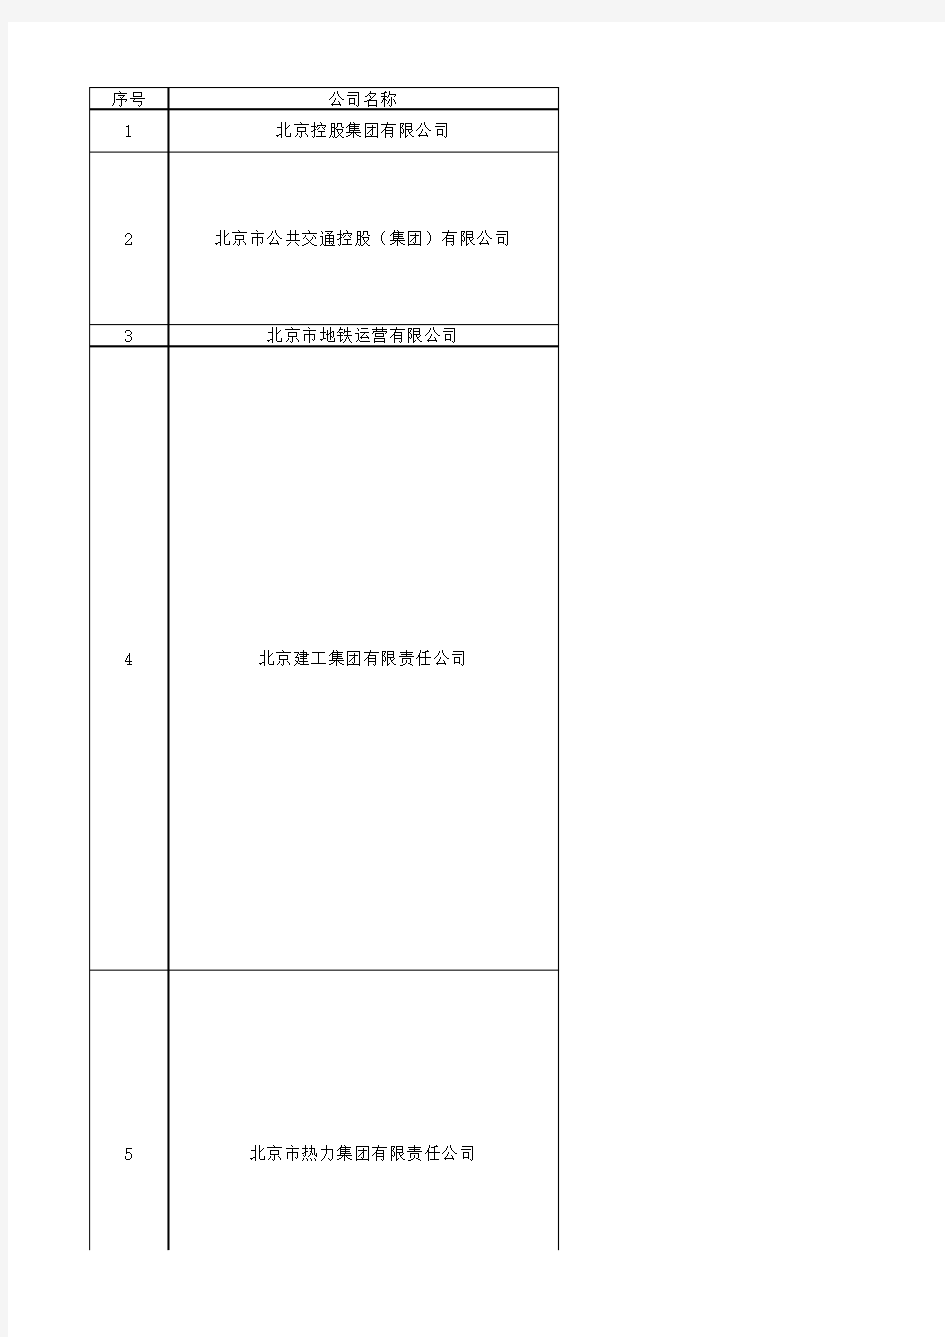 (完整版)北京市国企名单-国资委下属企业名单(142家)